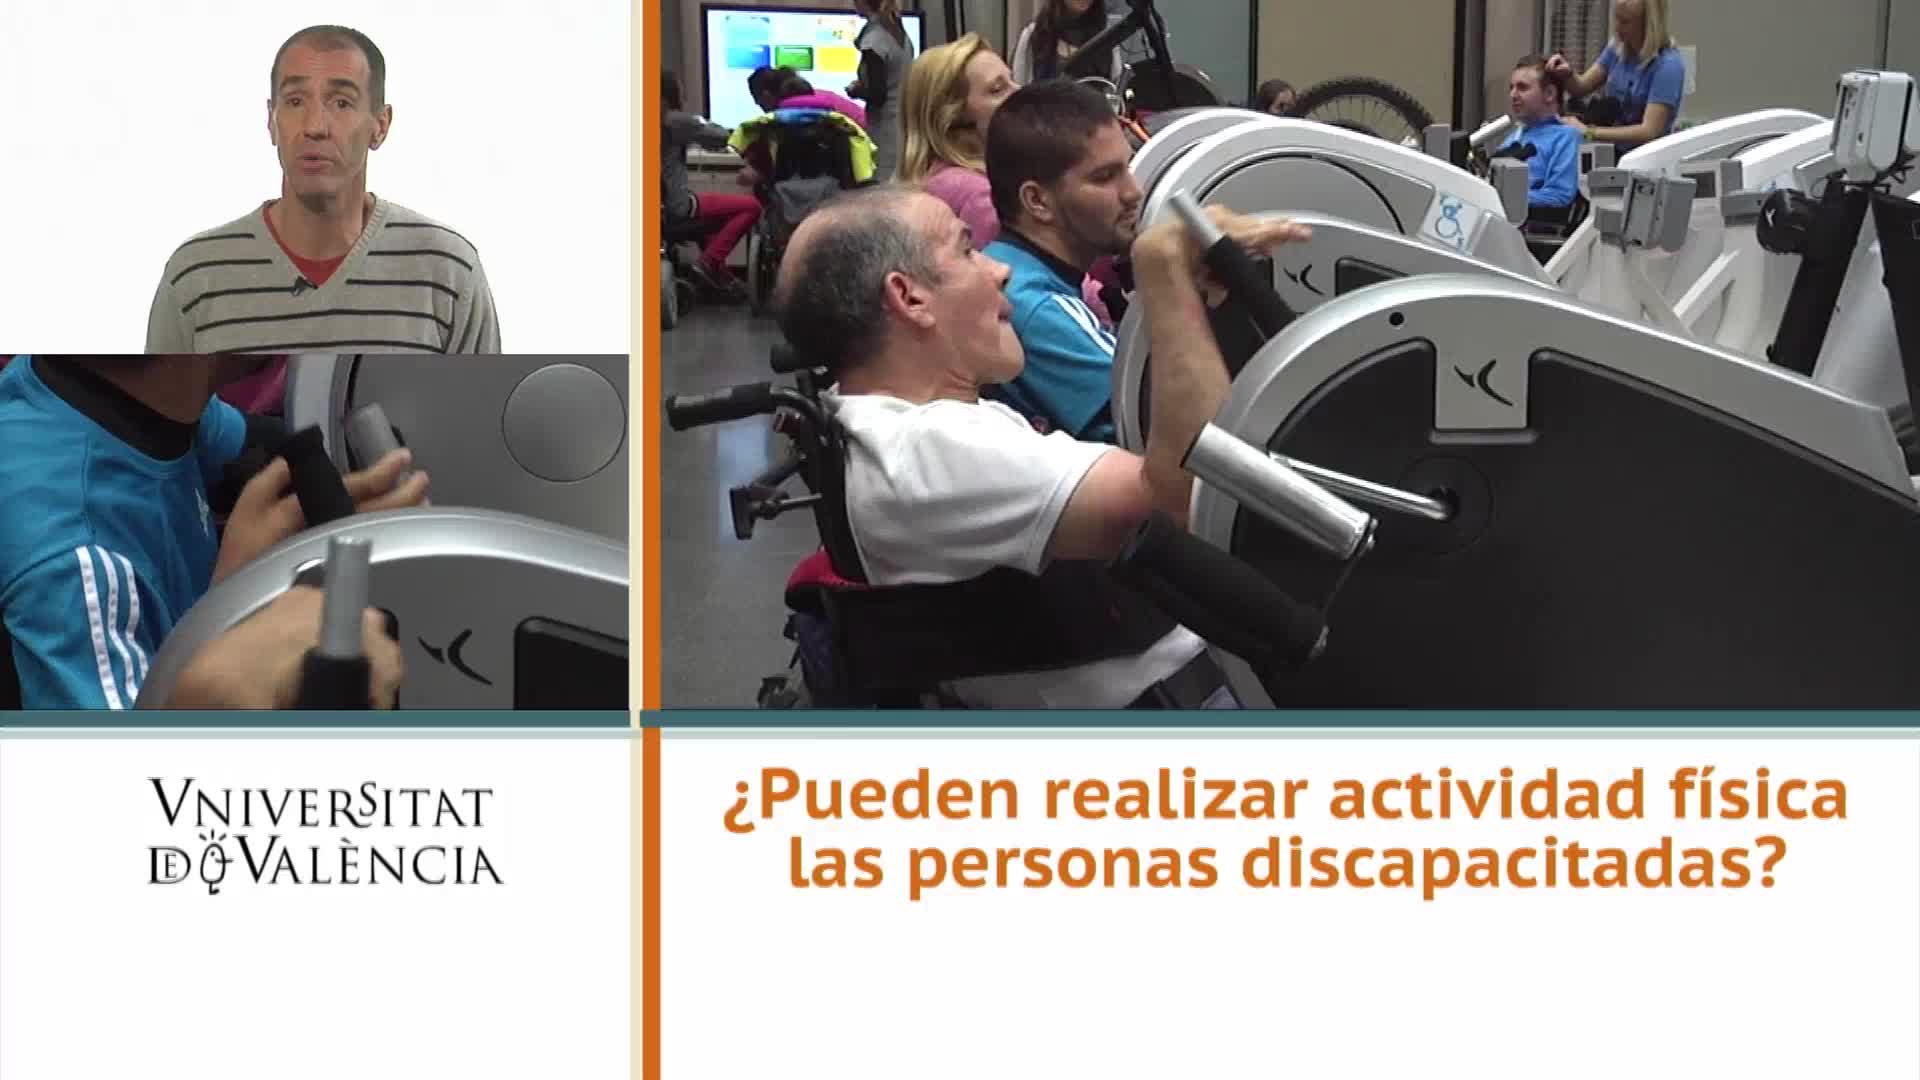 ¿Pueden realizar actividad física las personas discapacitadas?